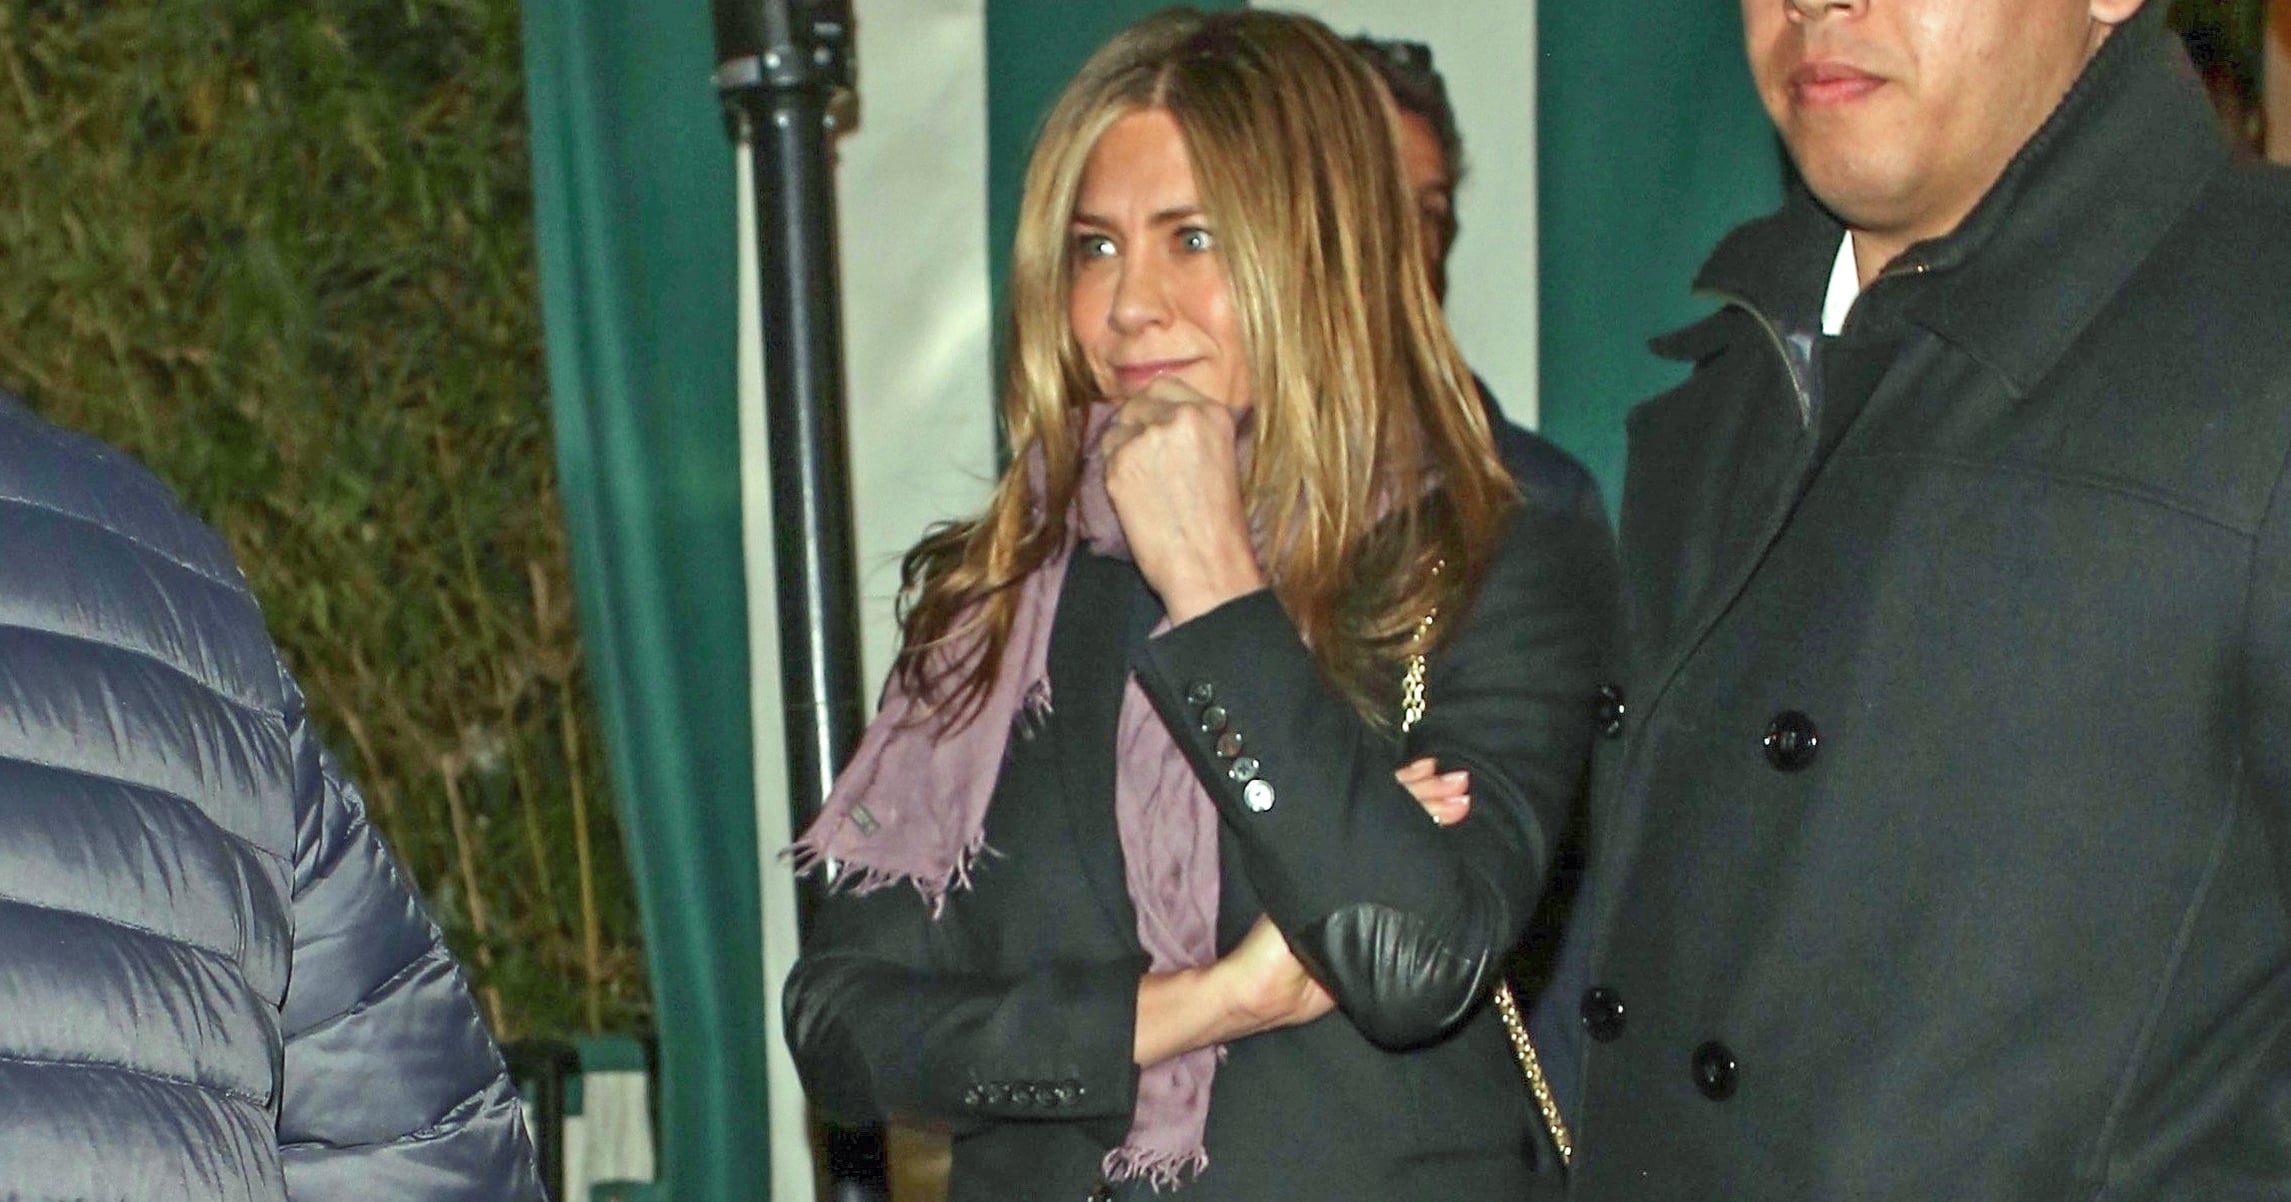 Jennifer Aniston Styles Leather Pants With Platform Oxfords